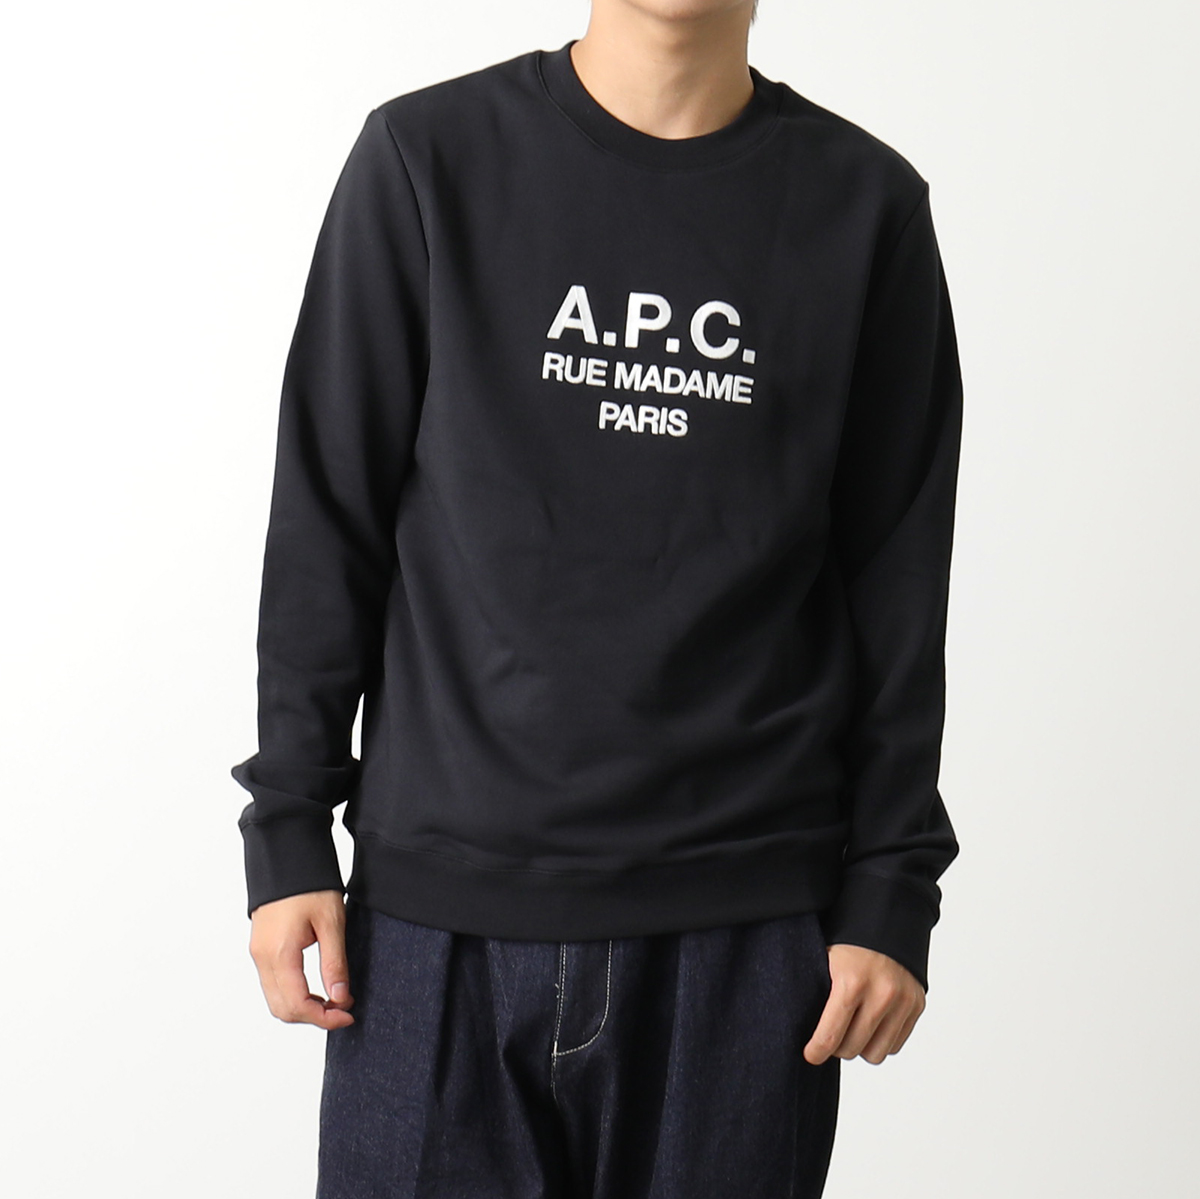 APC A.P.C. アーペーセー トレーナー rufus COEZD H27500 メンズ スウェット クルーネック 長袖 ロゴ刺繍 カラー3色